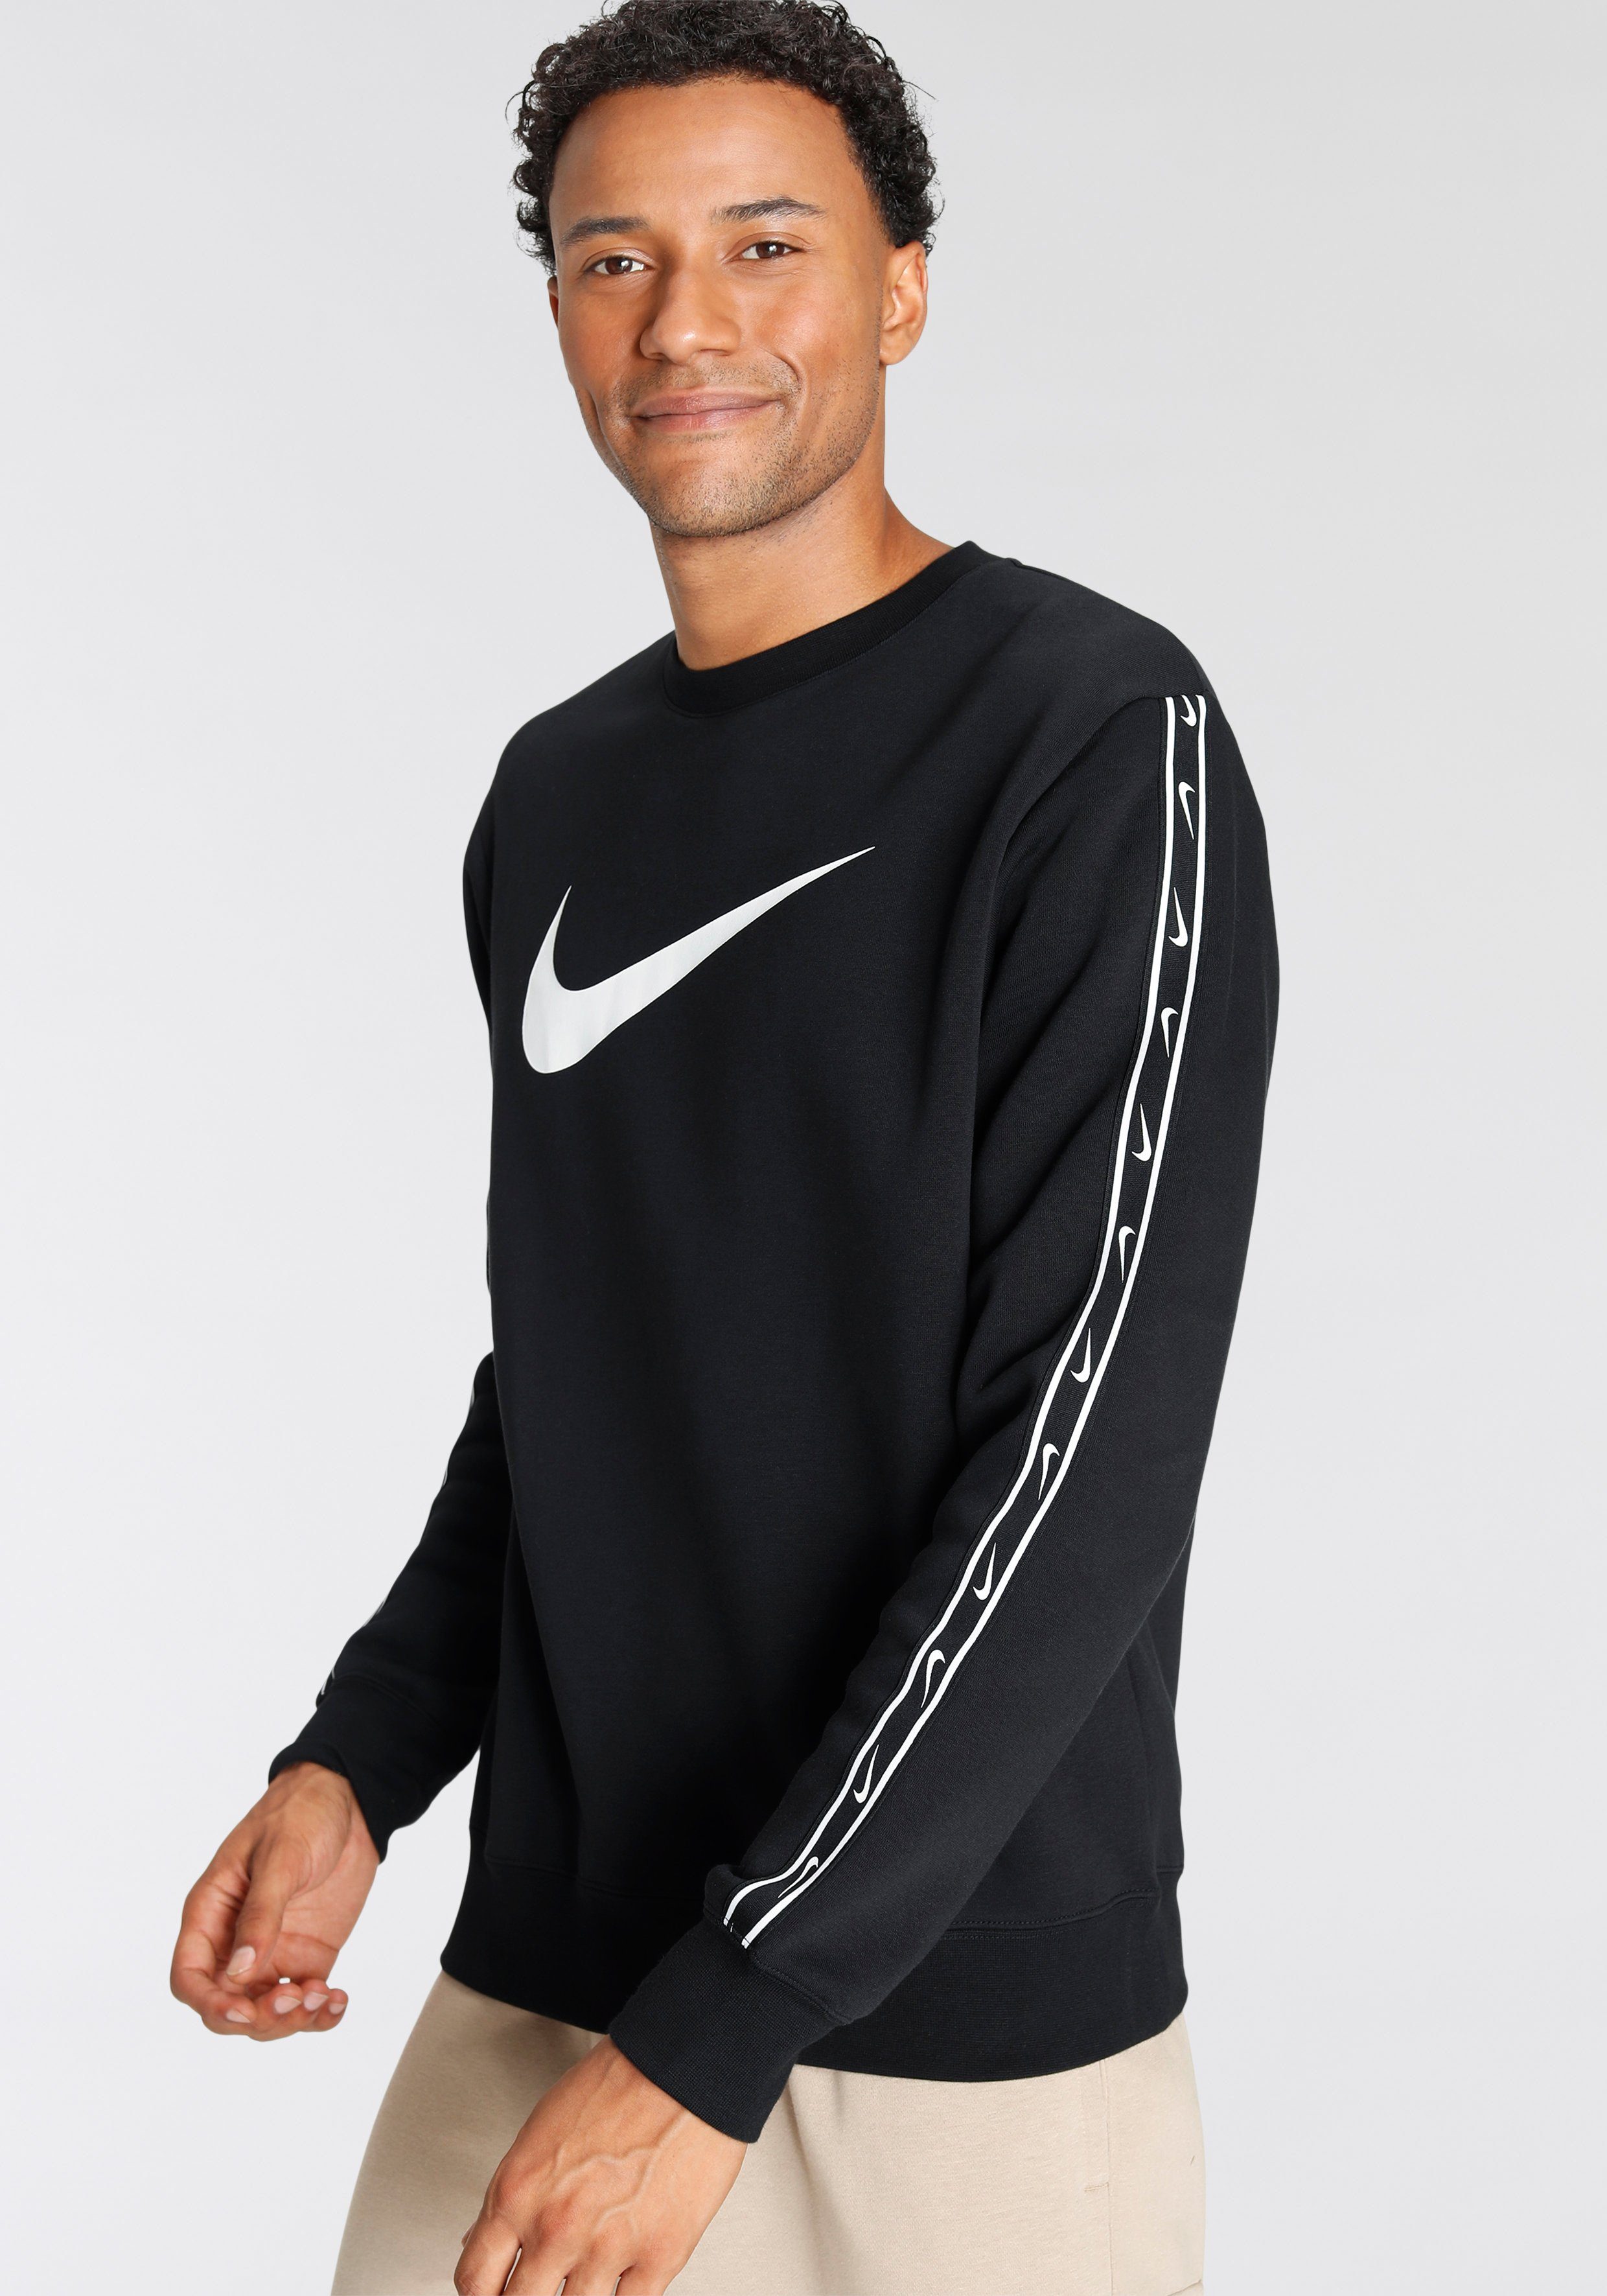 Nike Pullover Herren online kaufen | OTTO